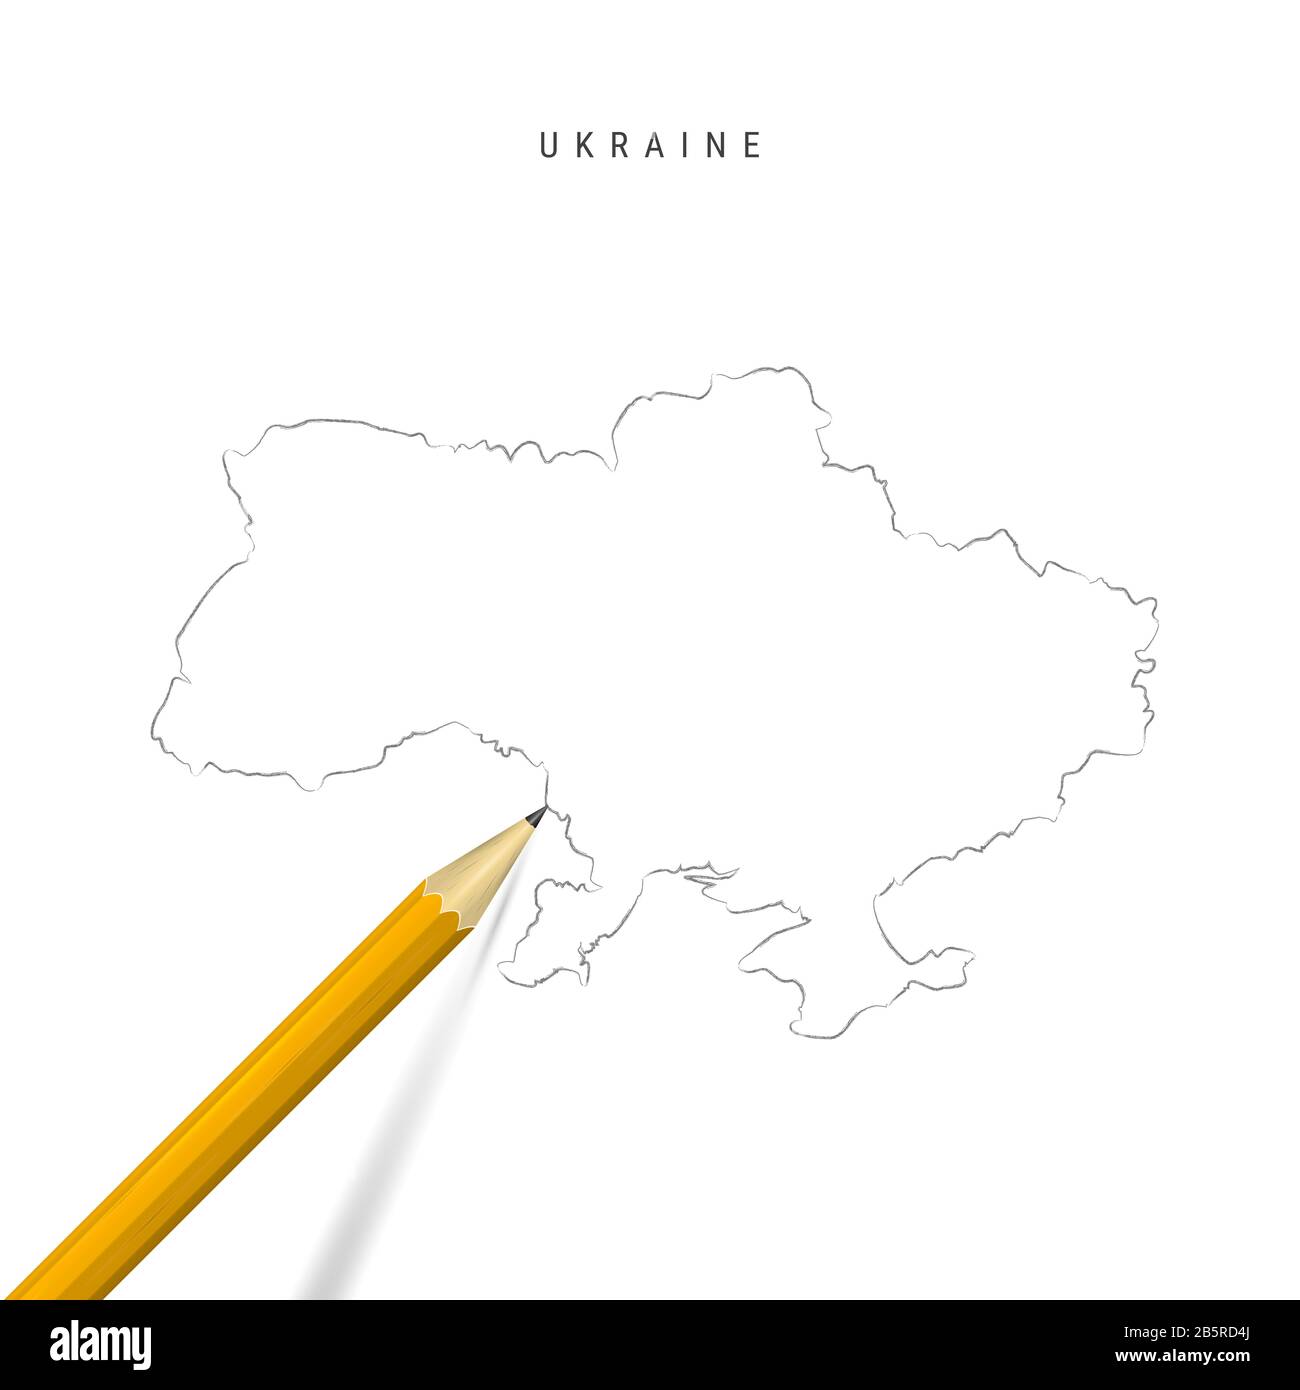 Ukraine Freihandbleistift Skizze Karte isoliert auf weißem Hintergrund. Leere handgezeichnete Karte der Ukraine. Realistischer 3D-Bleistift mit weichem Schatten. Stockfoto